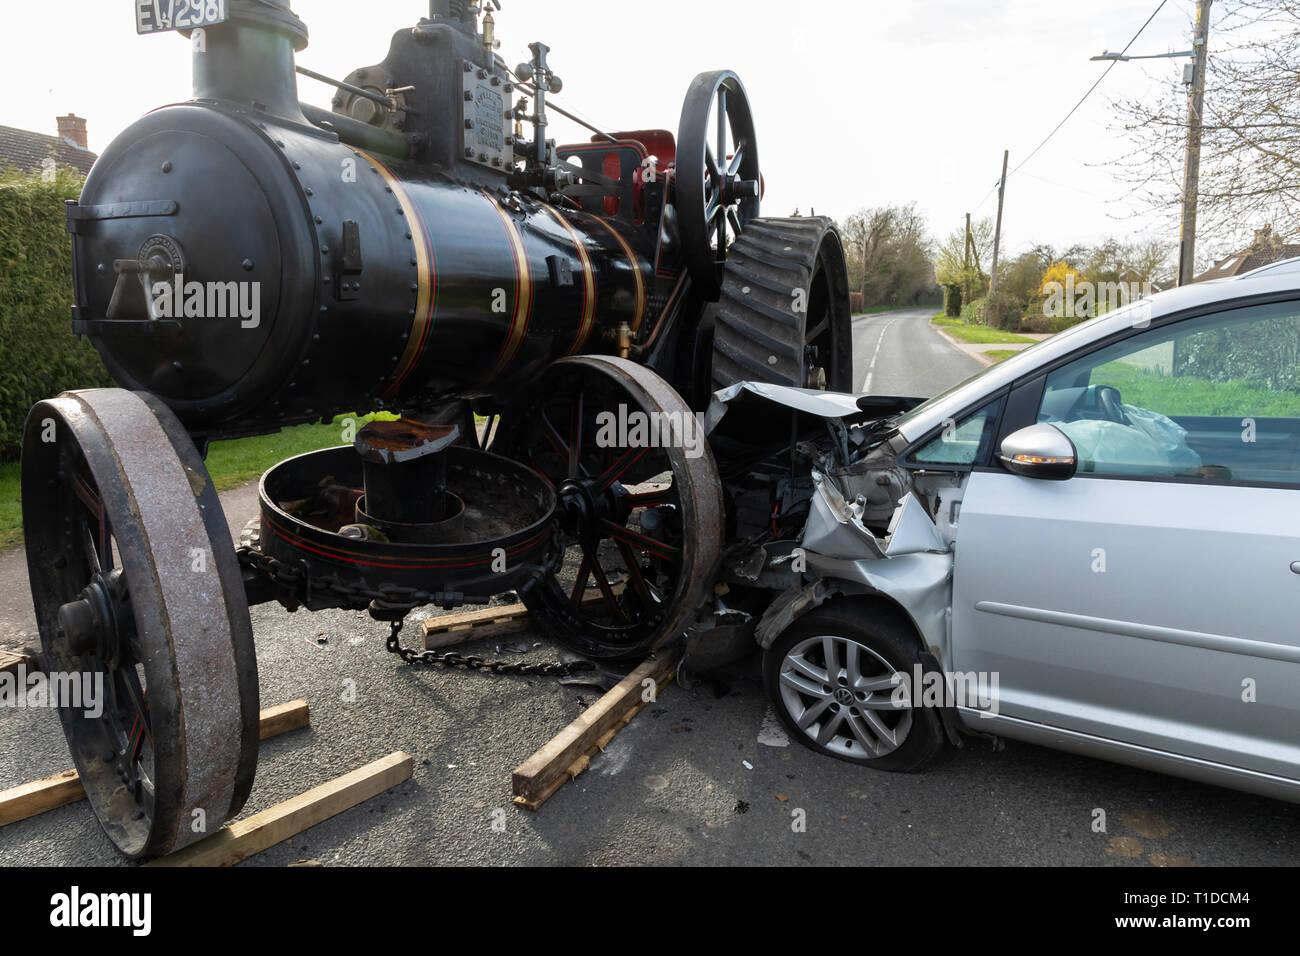 Great Barton, Suffolk, UK. 23 mars 2019. Accident de la route impliquant des traction à vapeur et une VolkswagonTouran in Great Barton, Suffolk, UK Banque D'Images